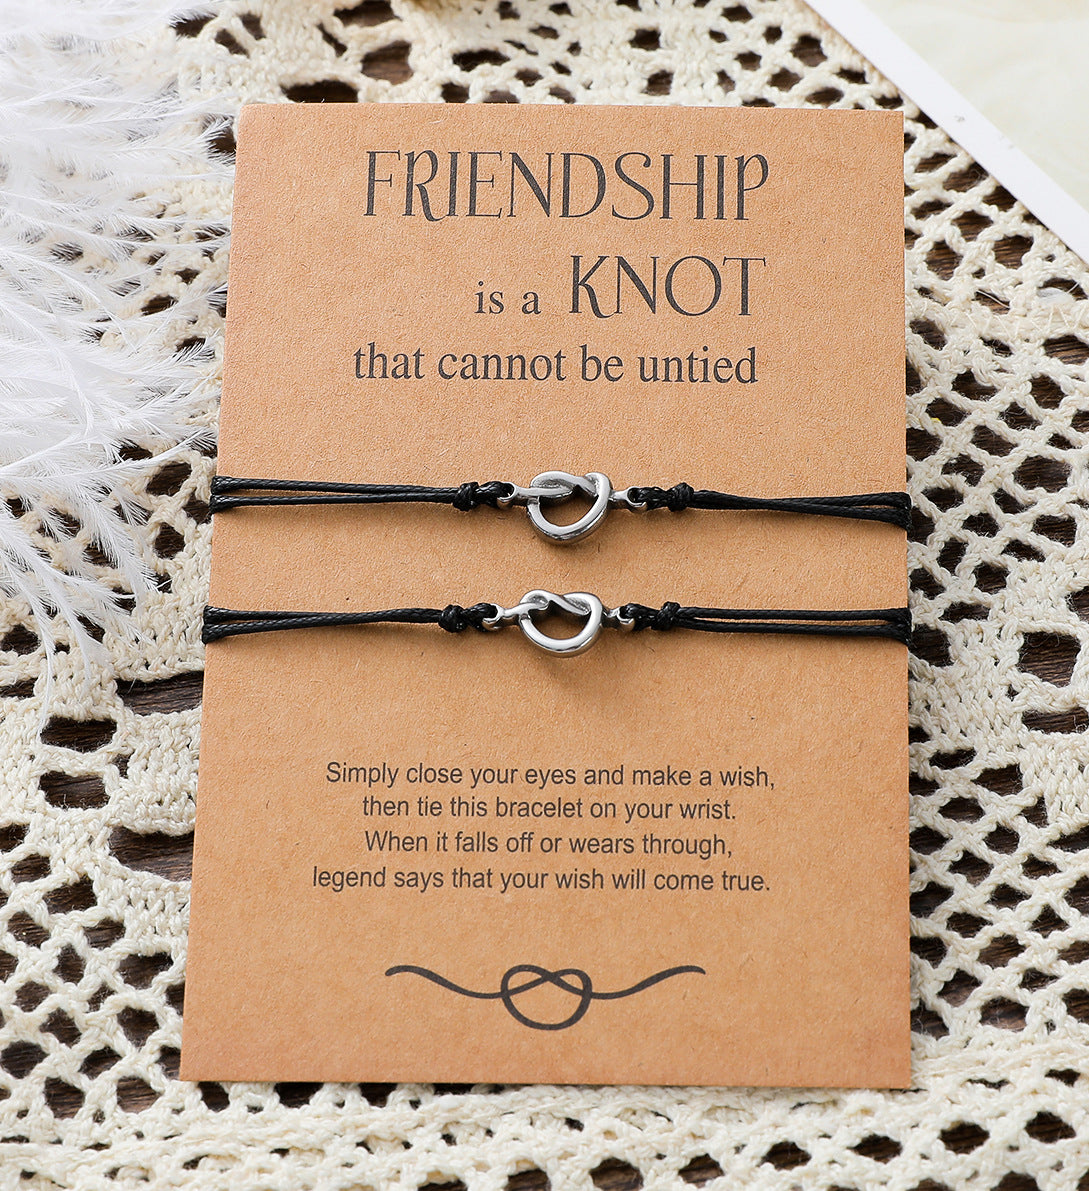 New Friendship Card Fine Polishing Oil Pressure Stainless Steel Knot Braided Bracelet Set